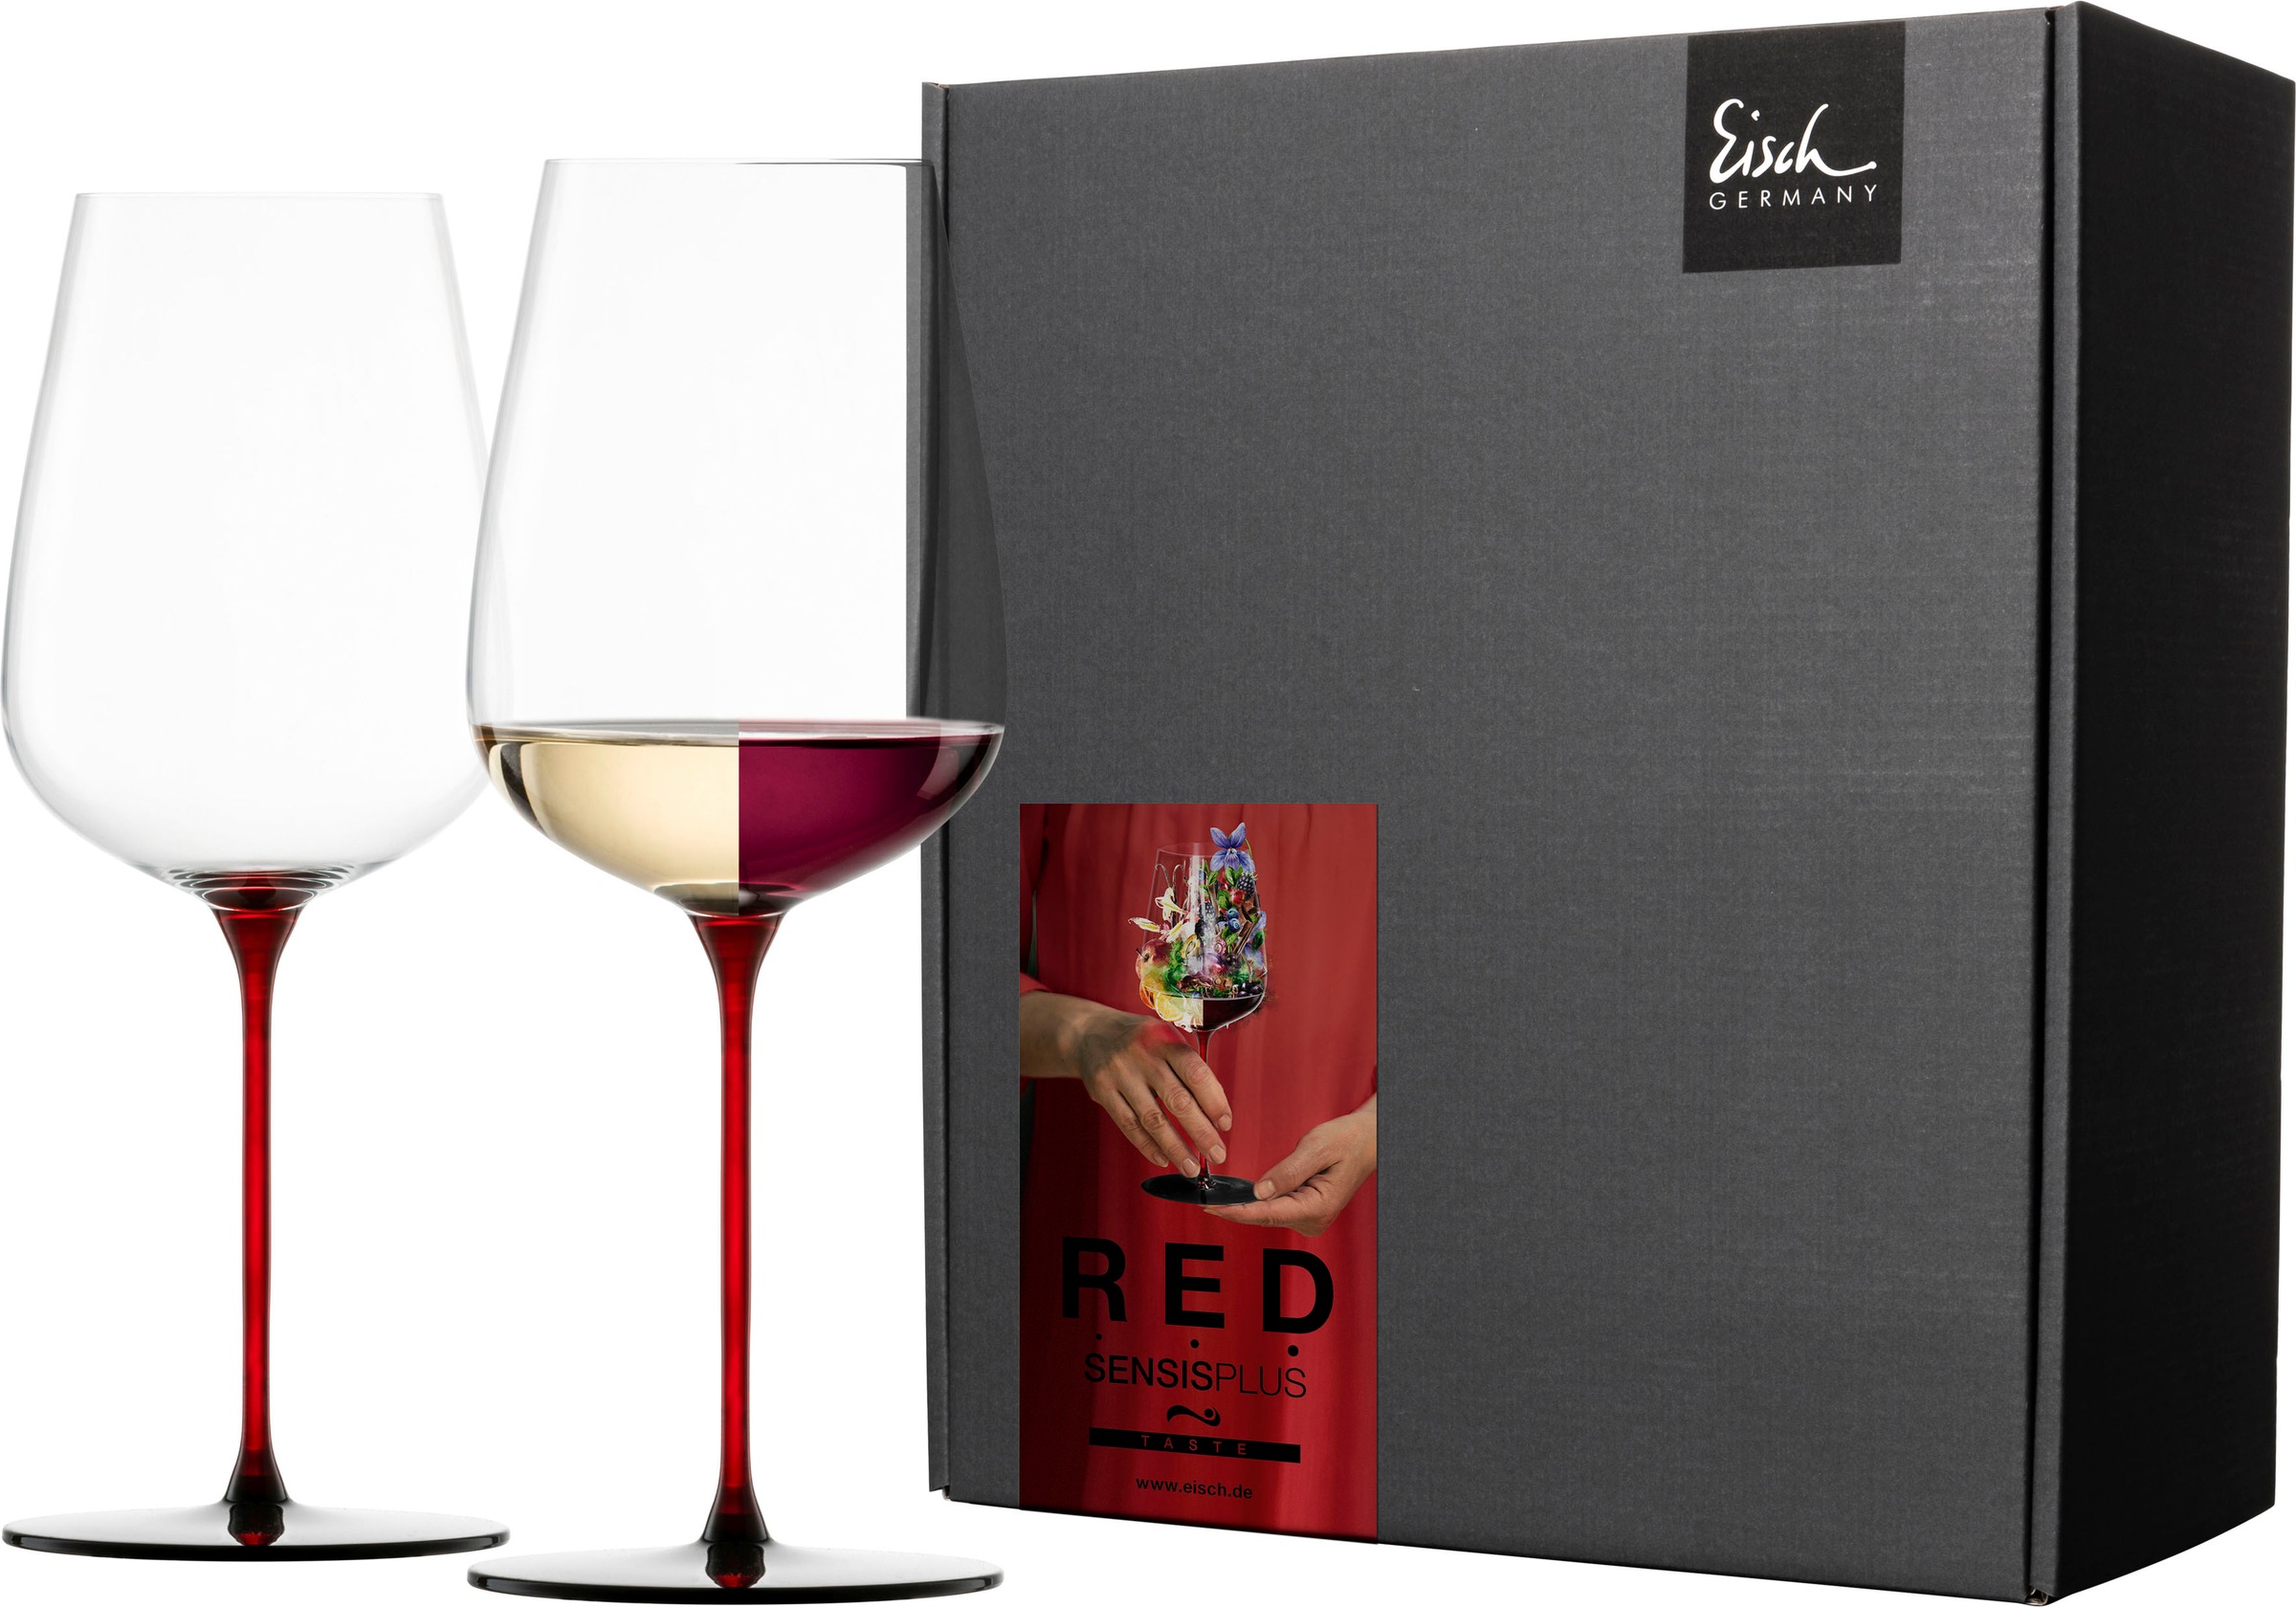 Eisch Weinglas »RED SENSISPLUS«, (Set, 2 tlg., 2 Gläser im Geschenkkarton), 580 ml, 2-teilig, Made in Germany